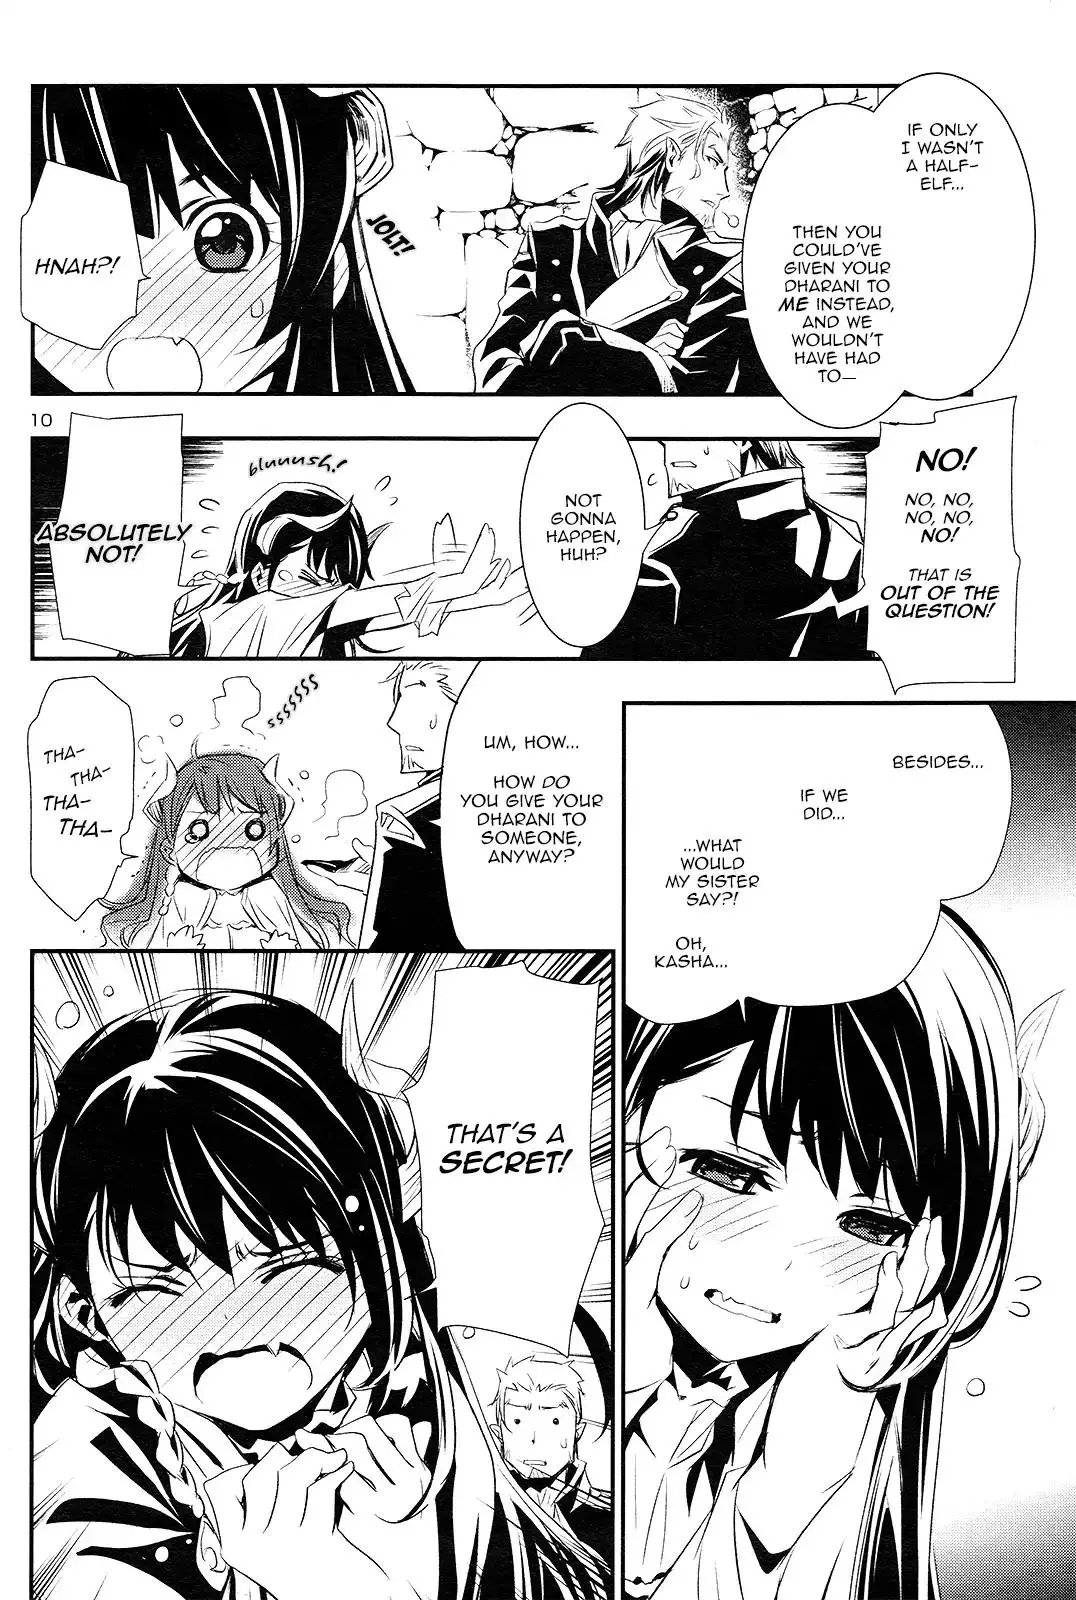 Shinju no Nectar - 1 page 10